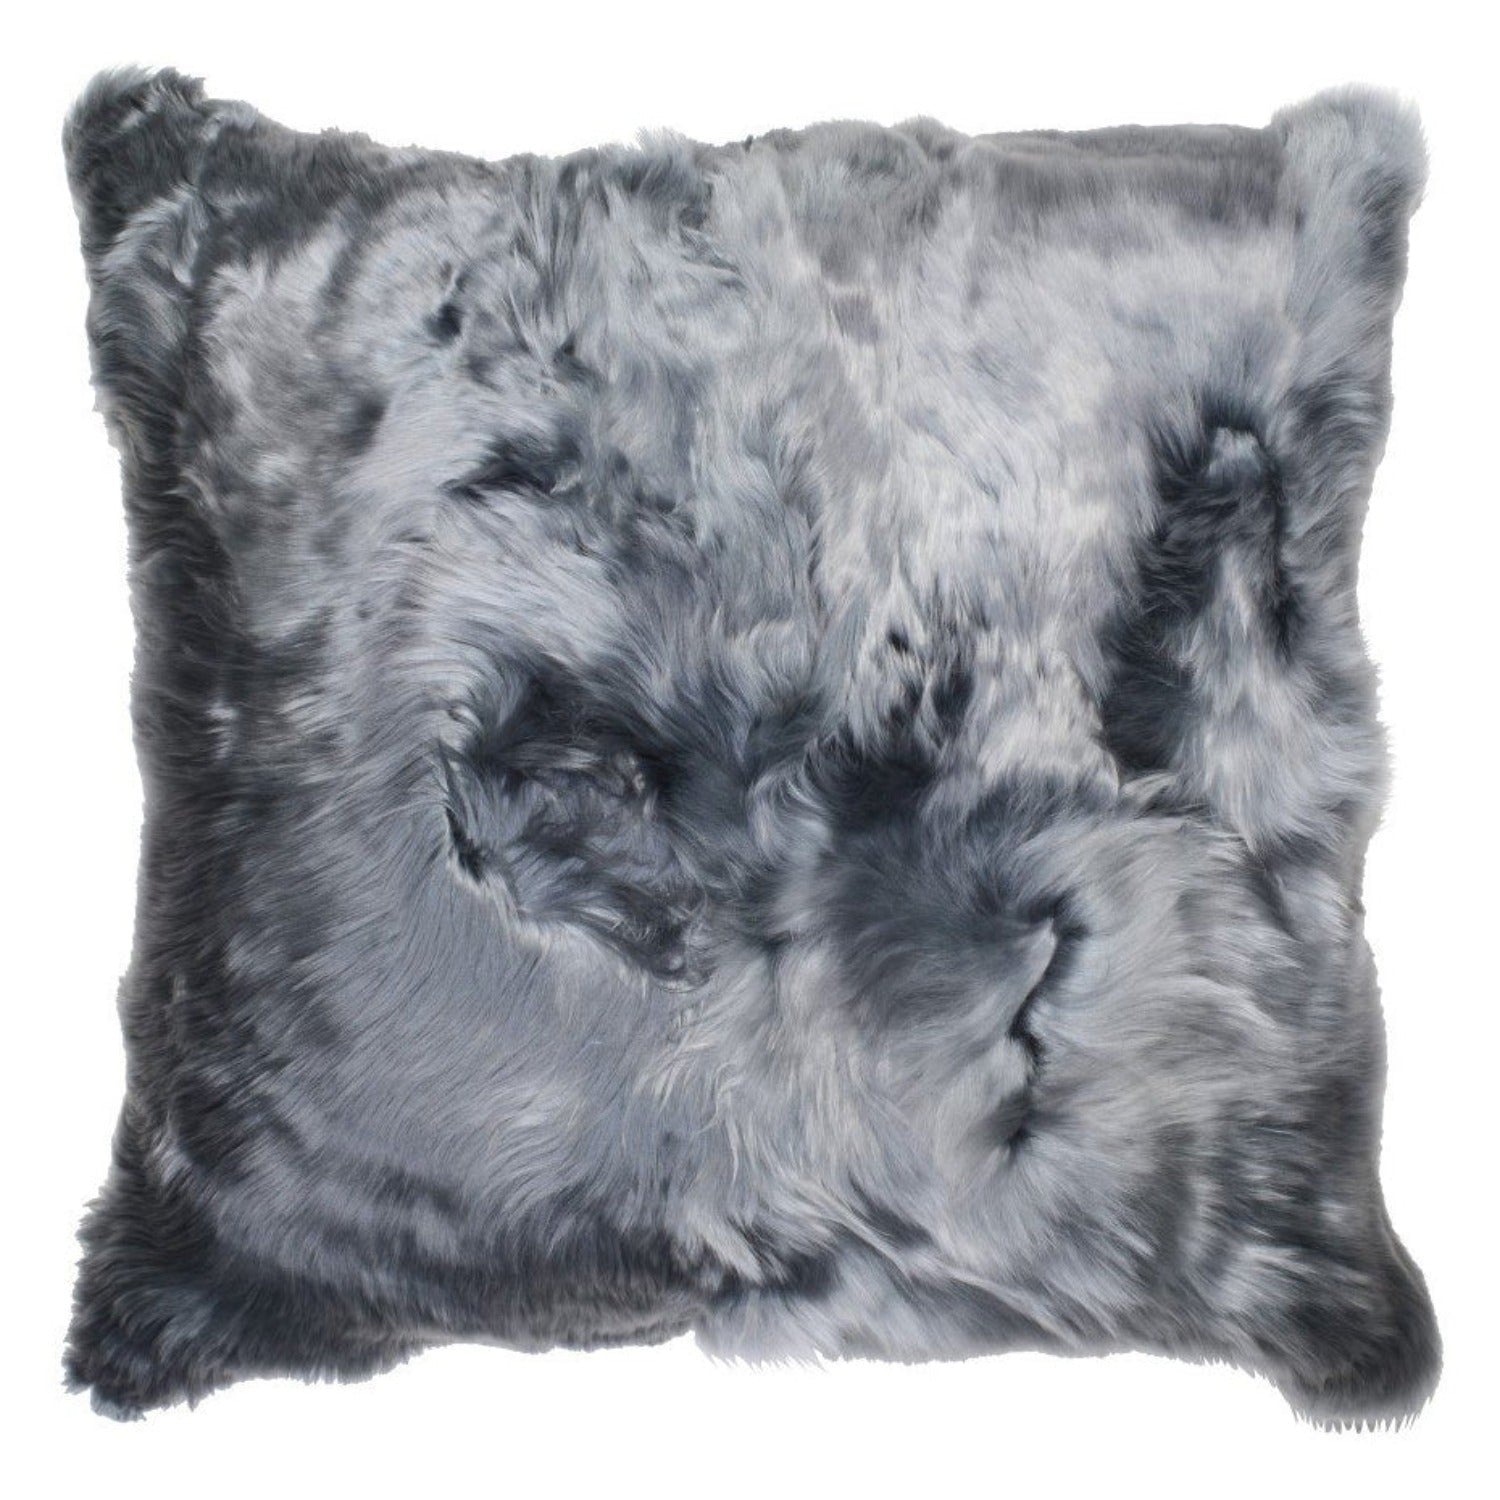 Suri Alpaca in Solana Fur Pillow